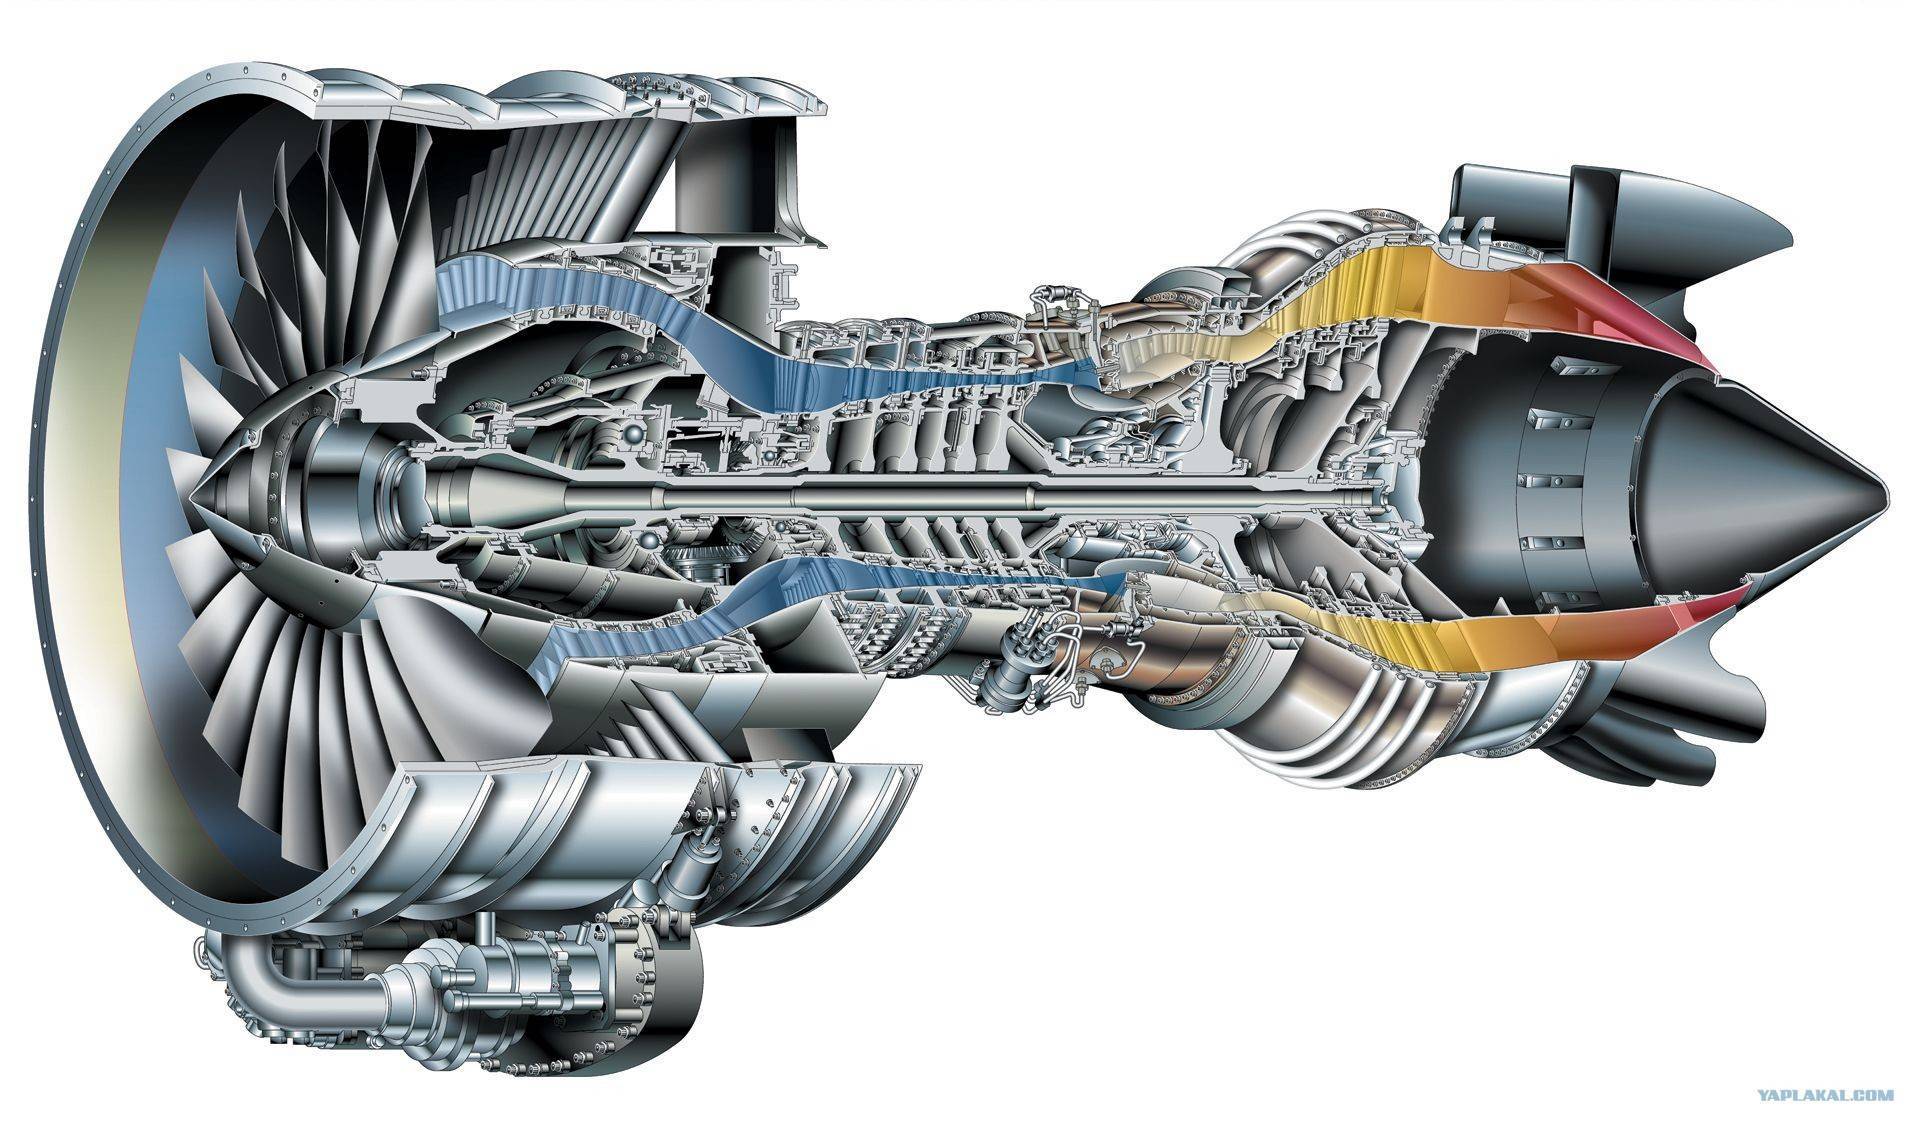 Турбореактивный двигатель. элементы конструкции. | авиация, понятная всем.